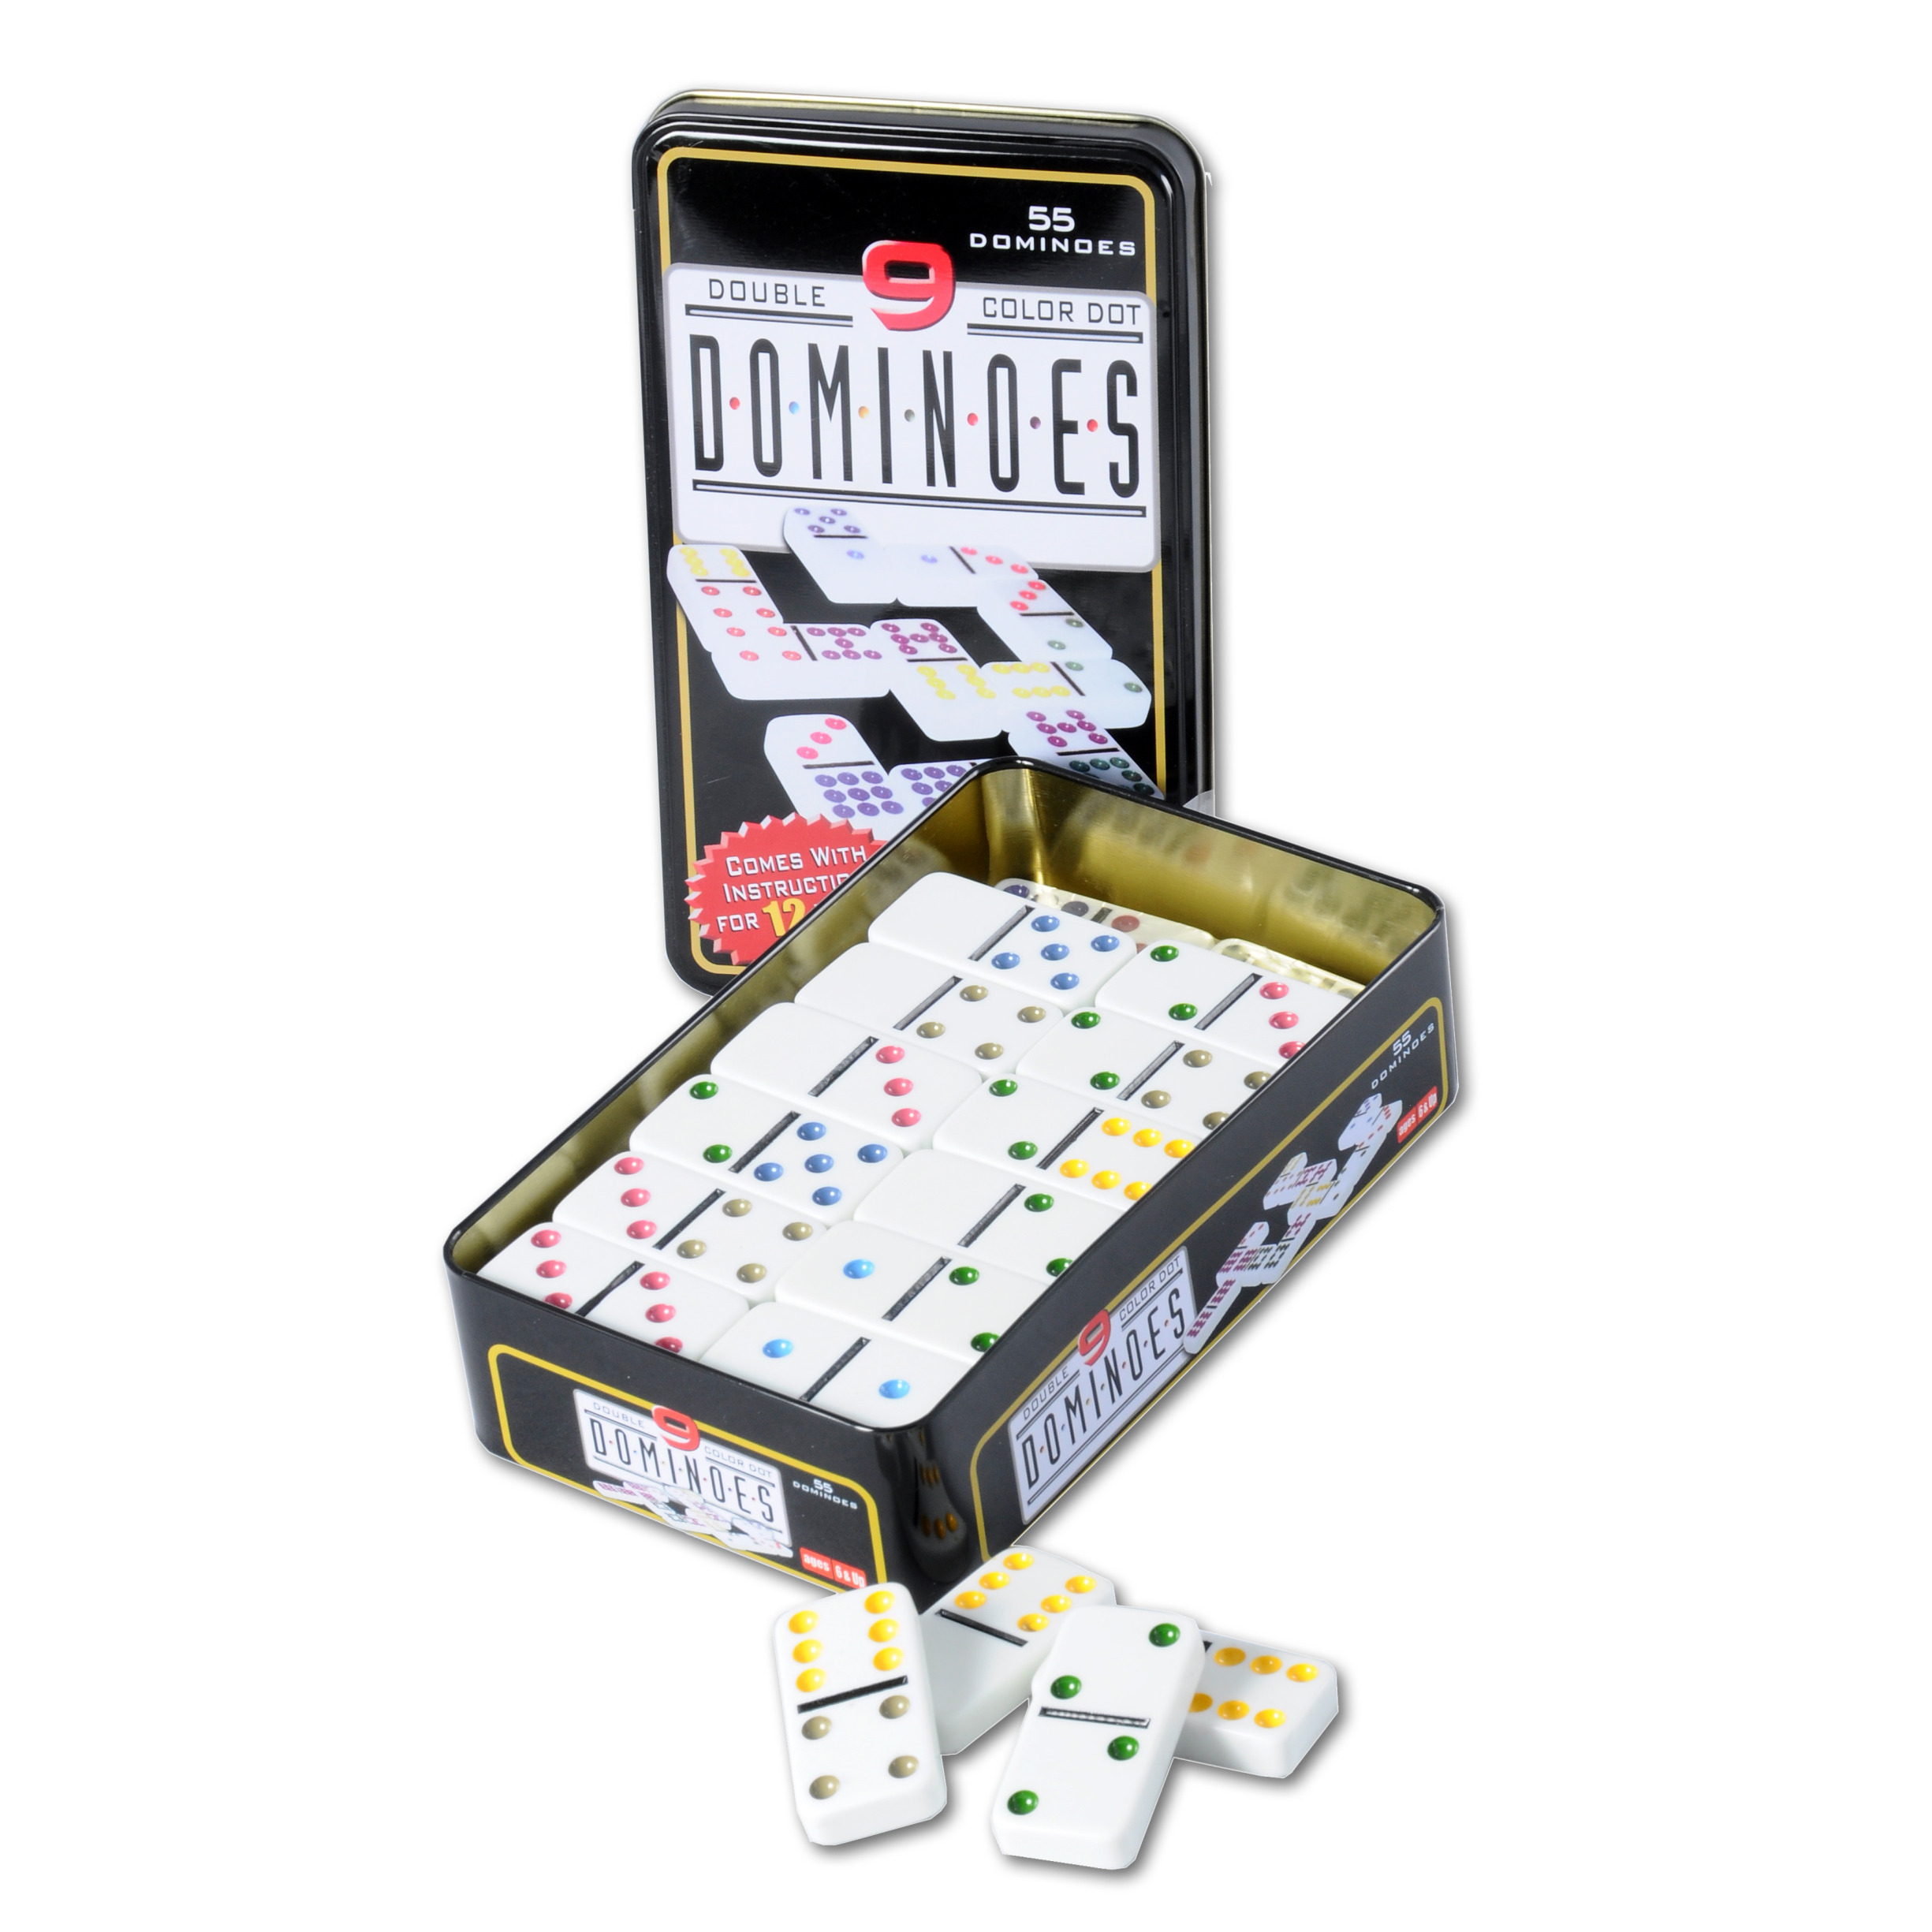 Domino spel dubbel-double 9 in blik 55x stenen